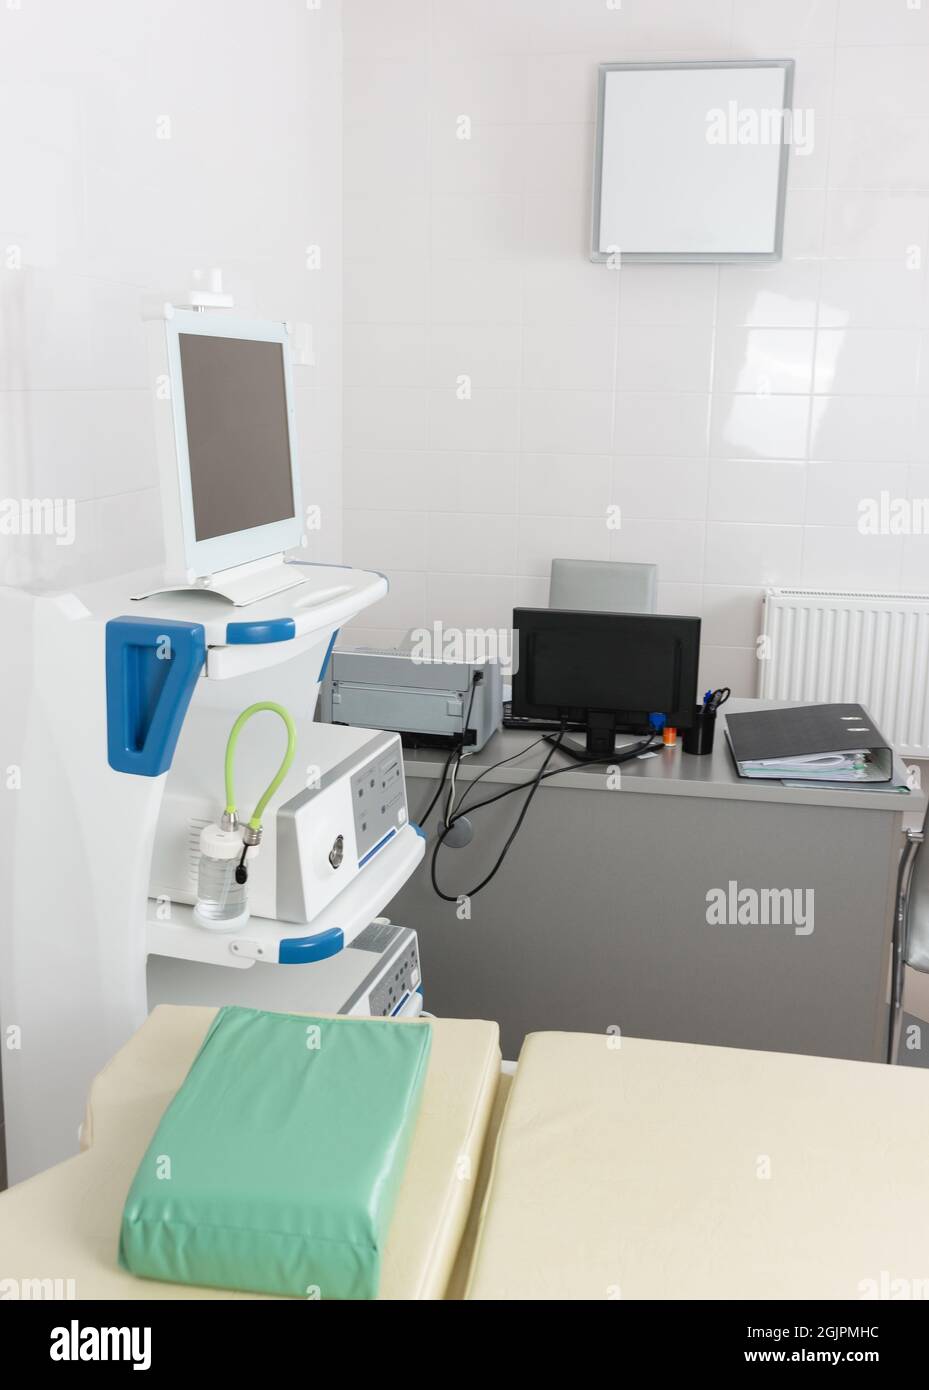 Das Innere eines medizinischen Büros mit Geräten für die Durchführung einer Videoendoskopiestudie mit einem Arztarbeitsplatz, der mit Bürogeräten ausgestattet ist Stockfoto